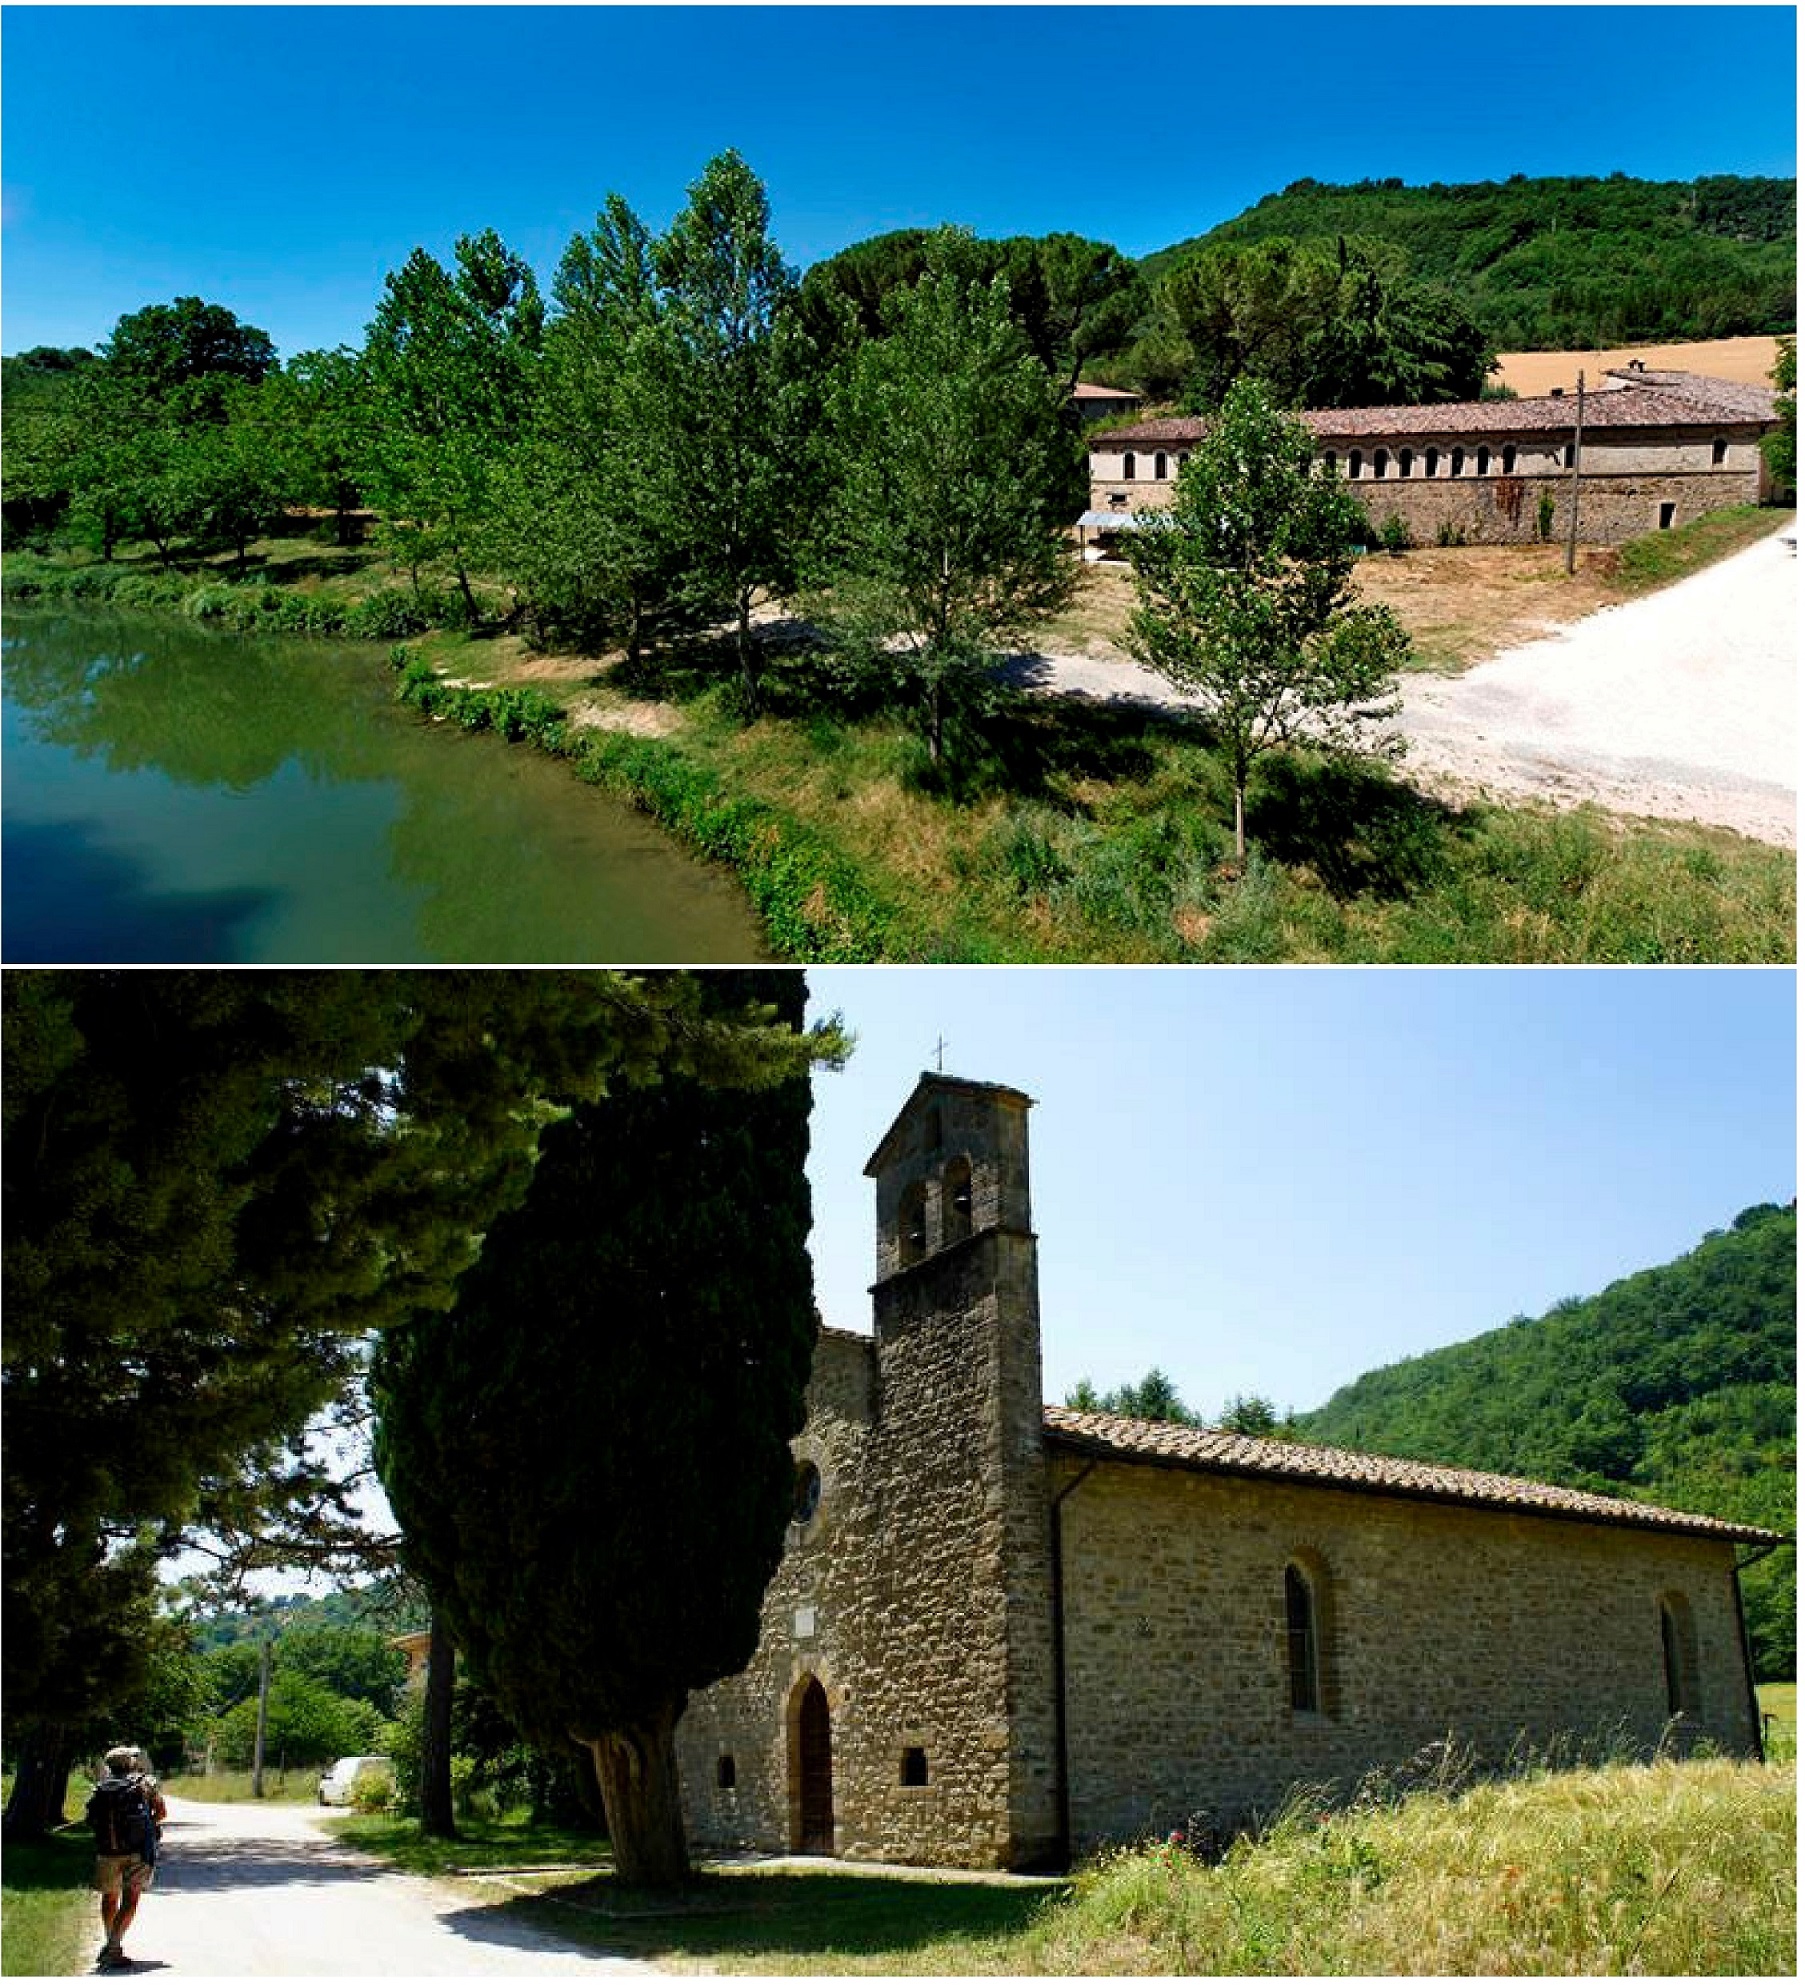 fiume Chiascio e Chiesa di S. Benedetto e Paolino da Coccorano - loc. Barcaccia, Valfabbrica